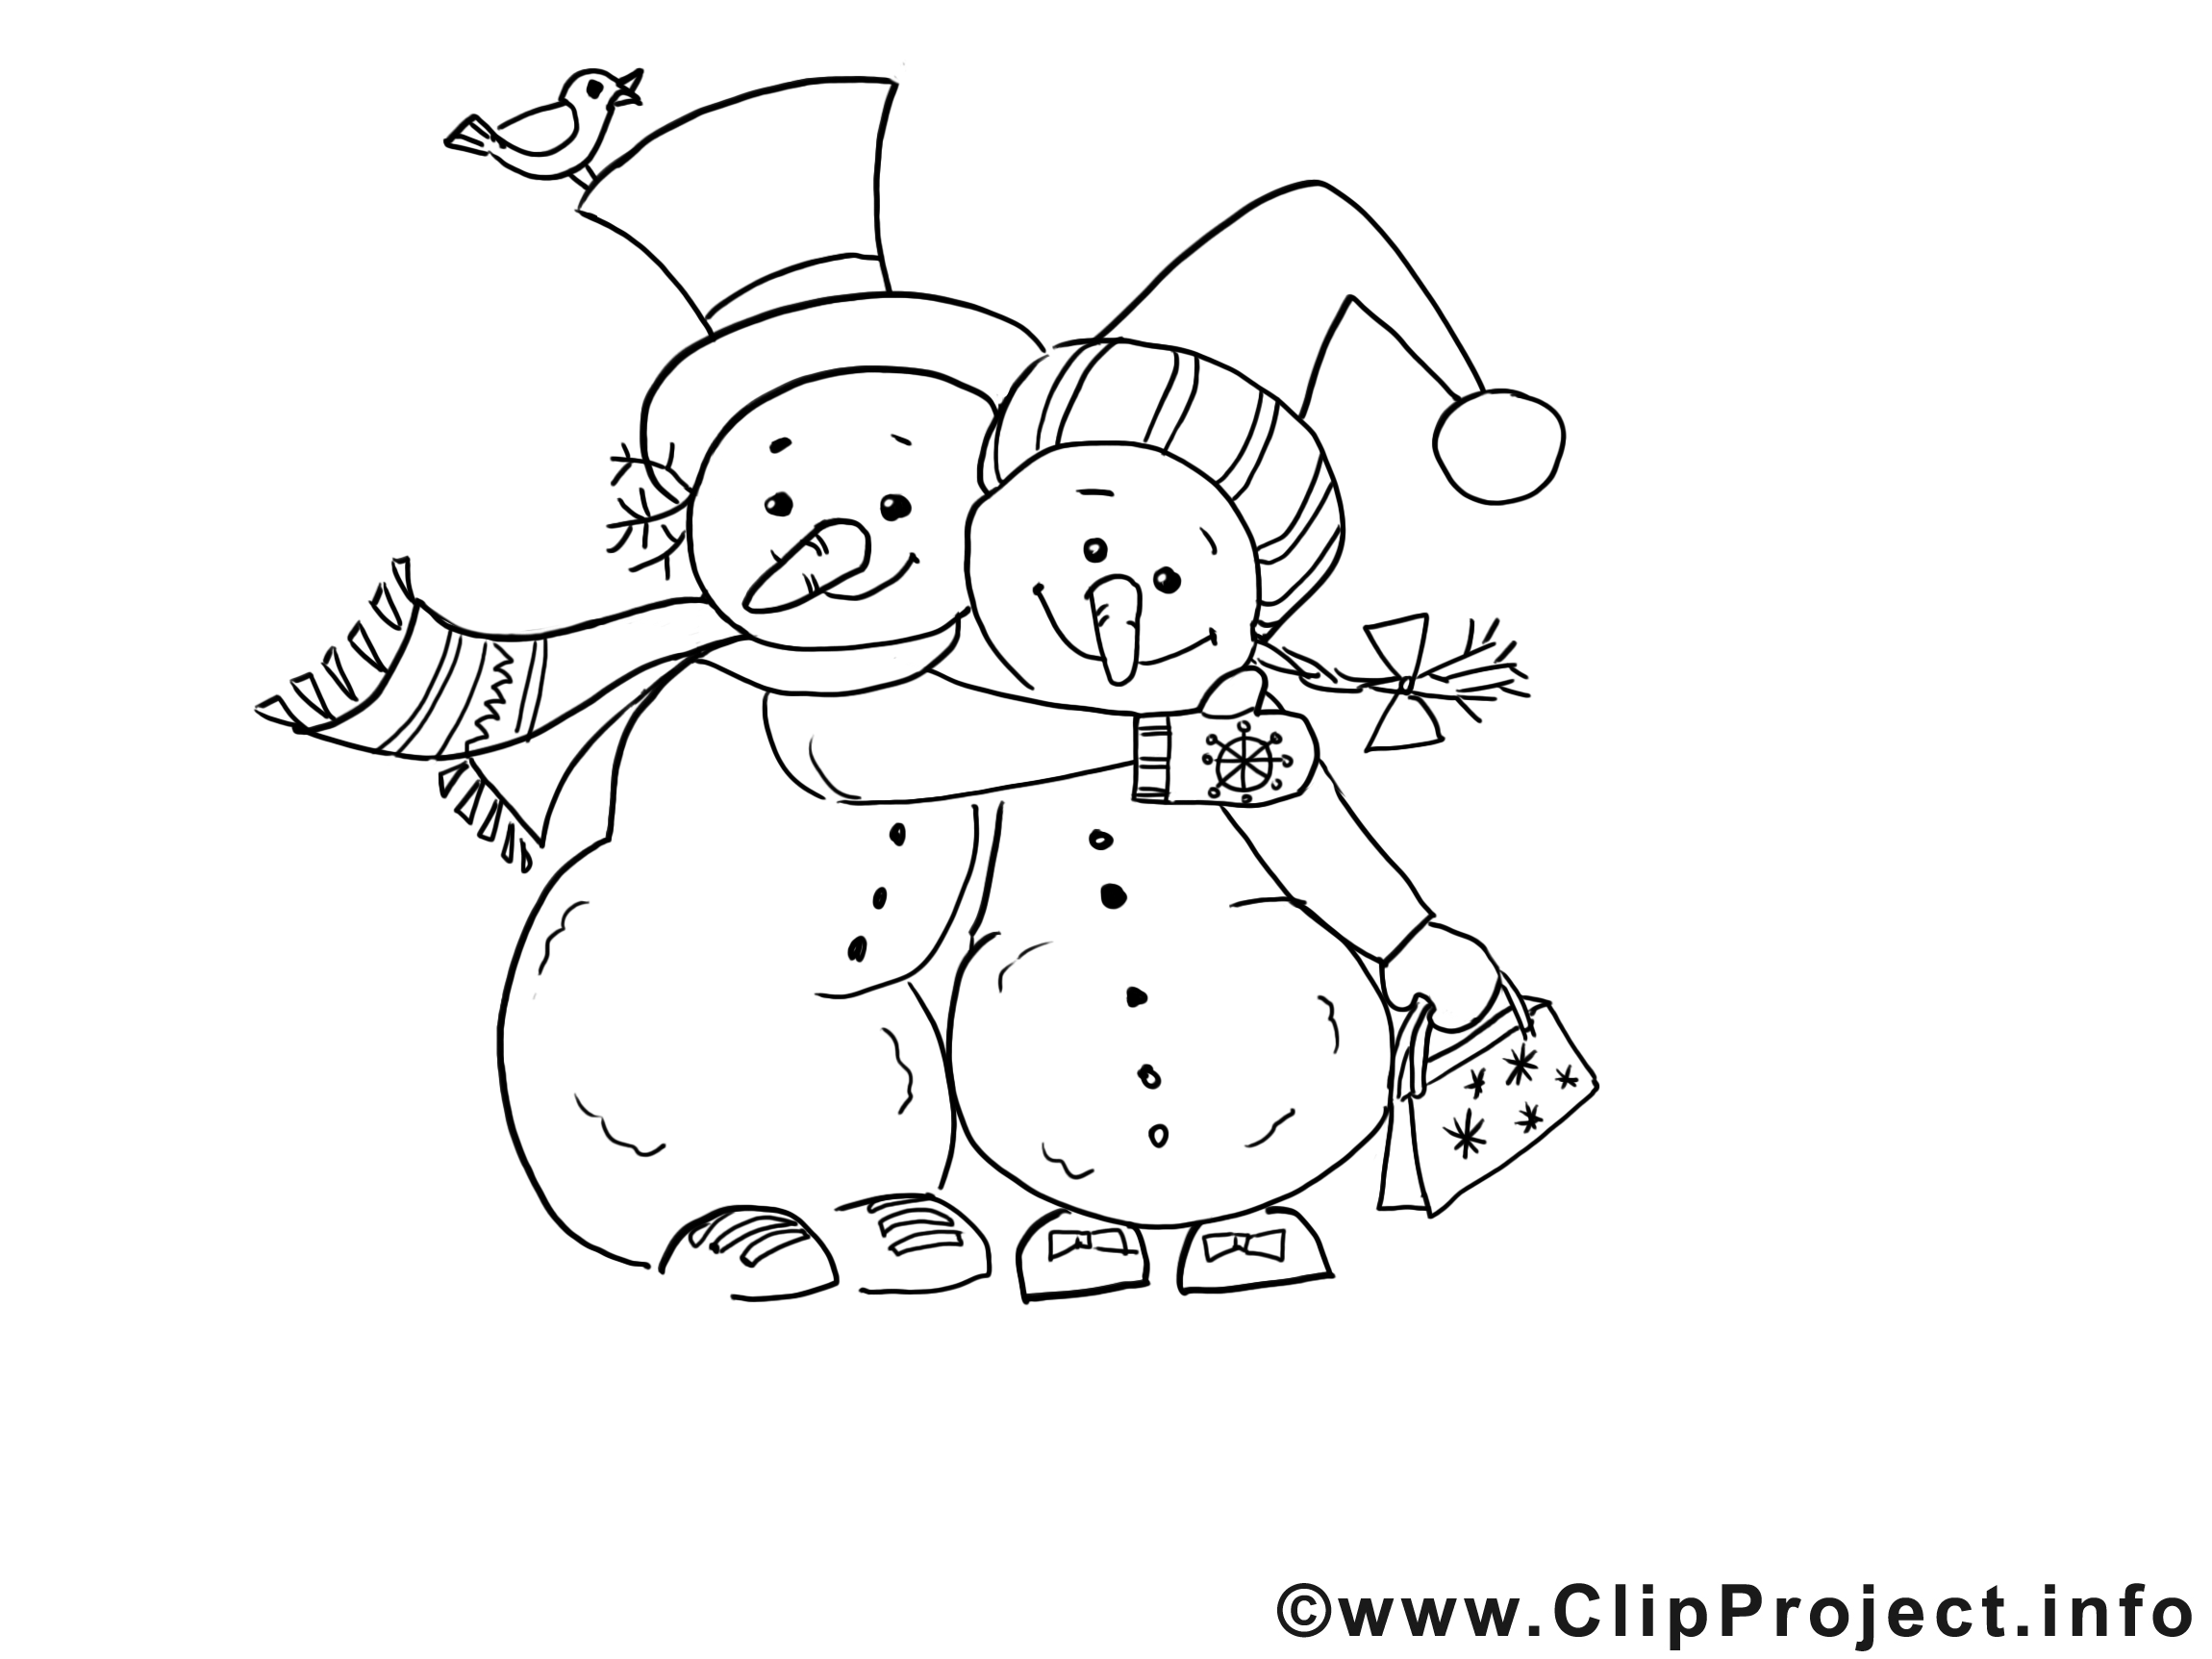 Bonhommes de neige image – Noël images à colorier